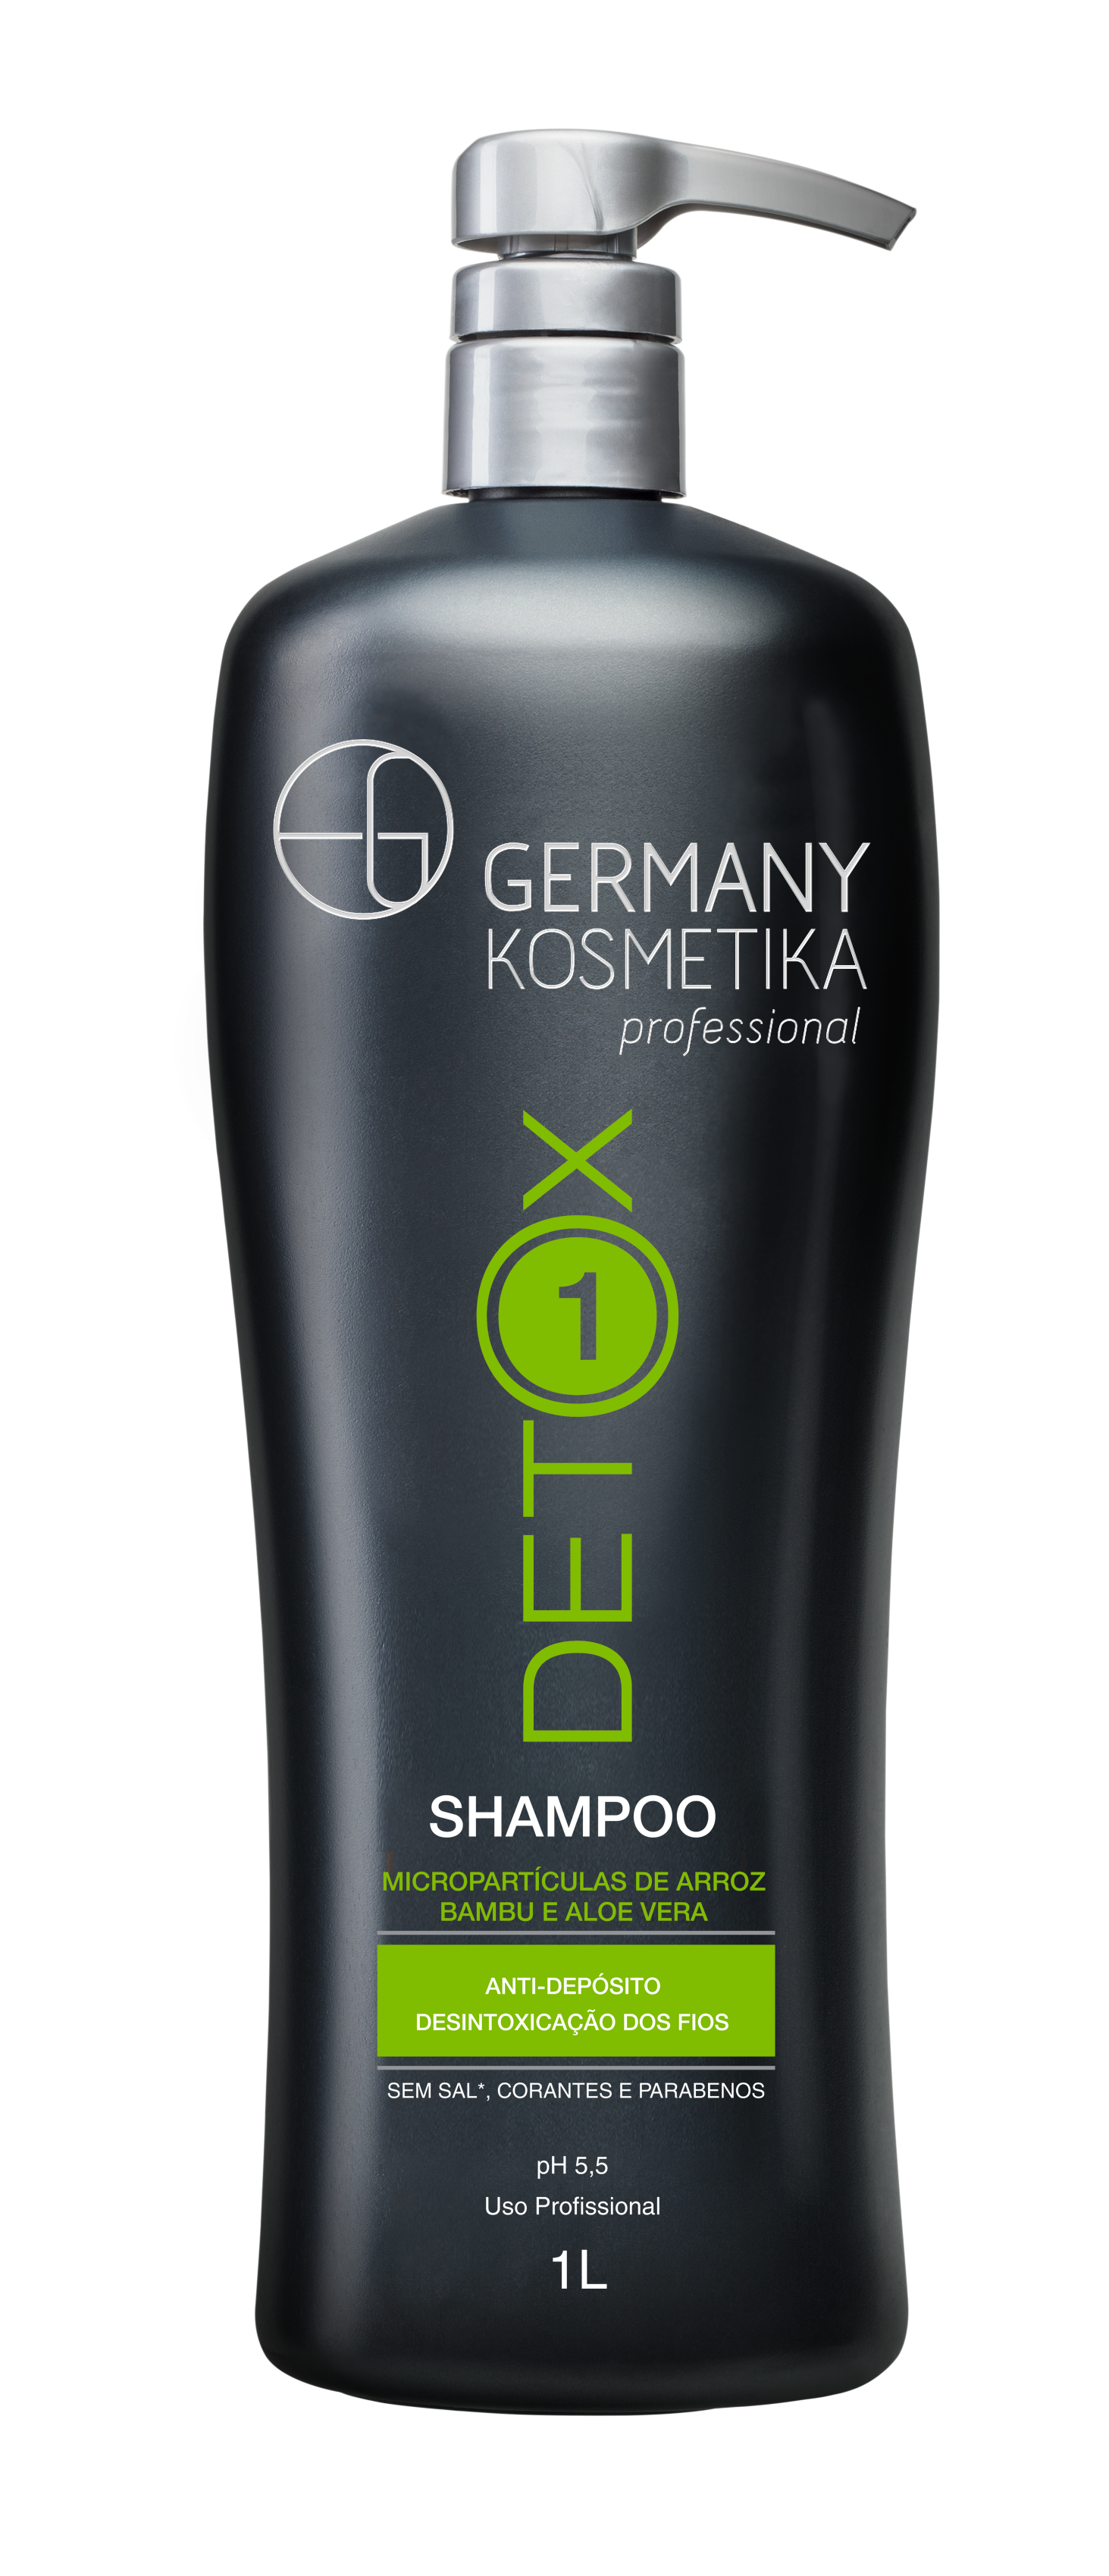 GERMANY DETOX Shampoo copy